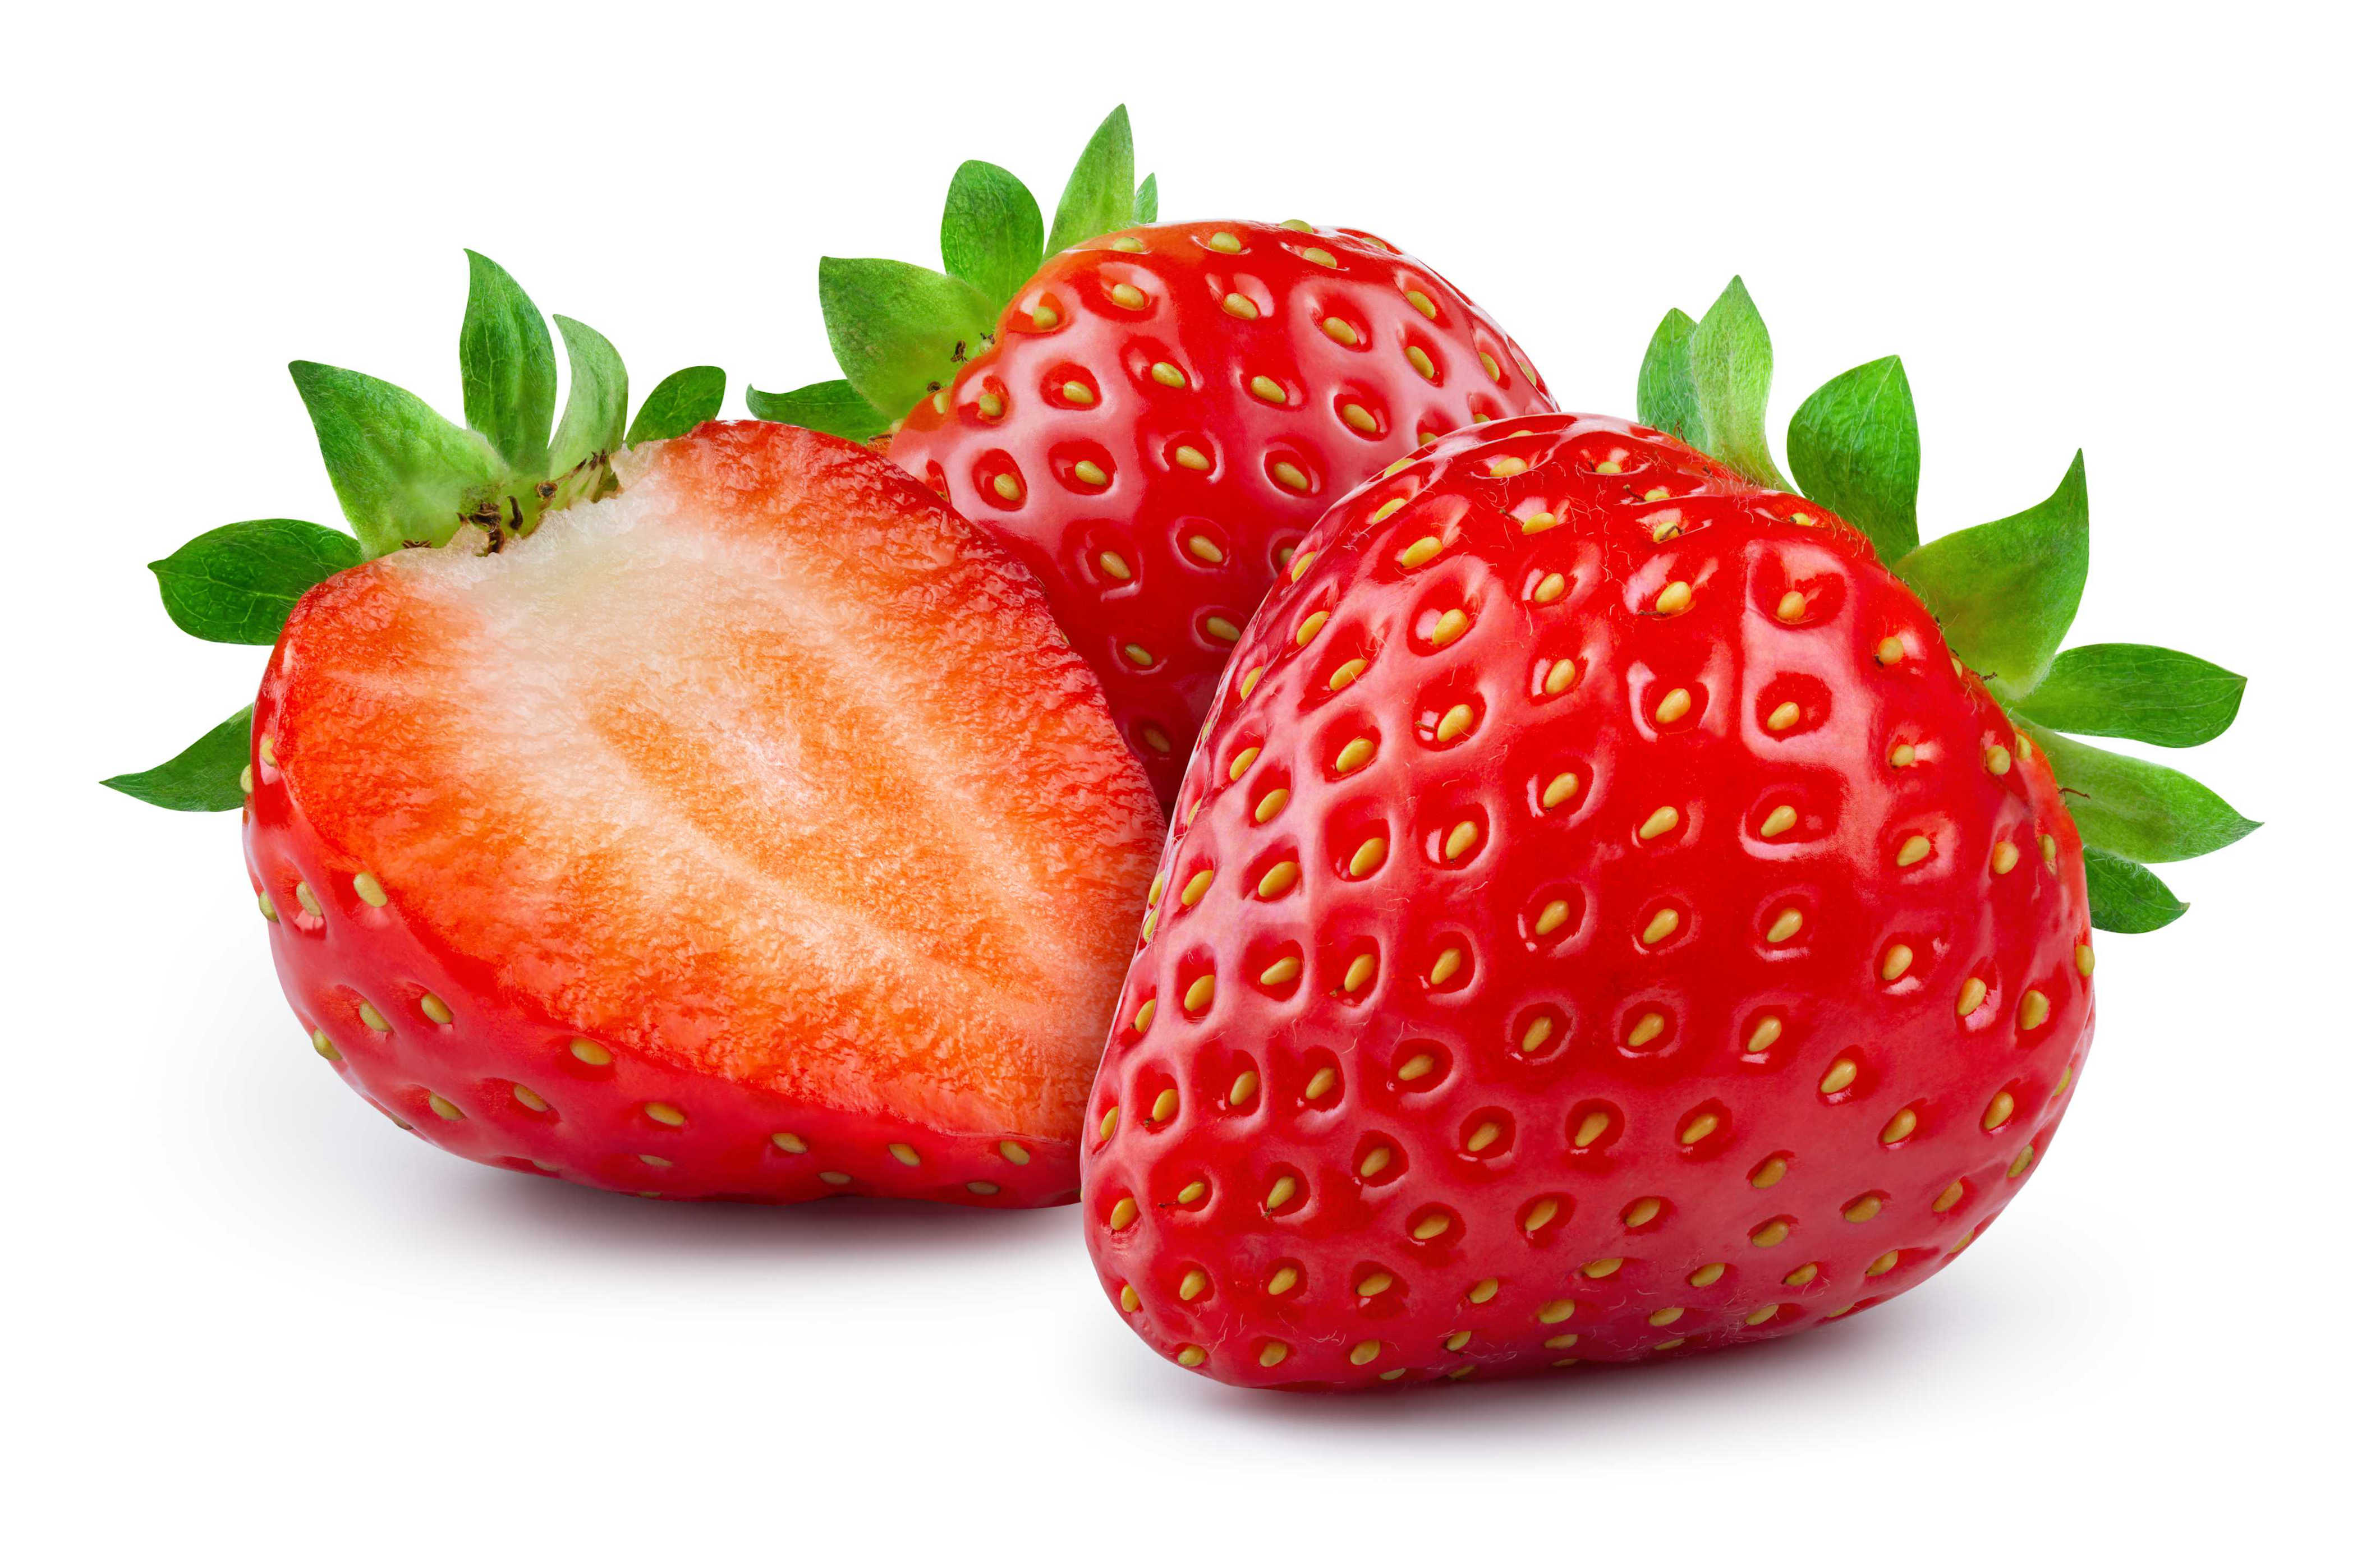 microsoft, faq professionnelles : les fraises sont-elles saines?